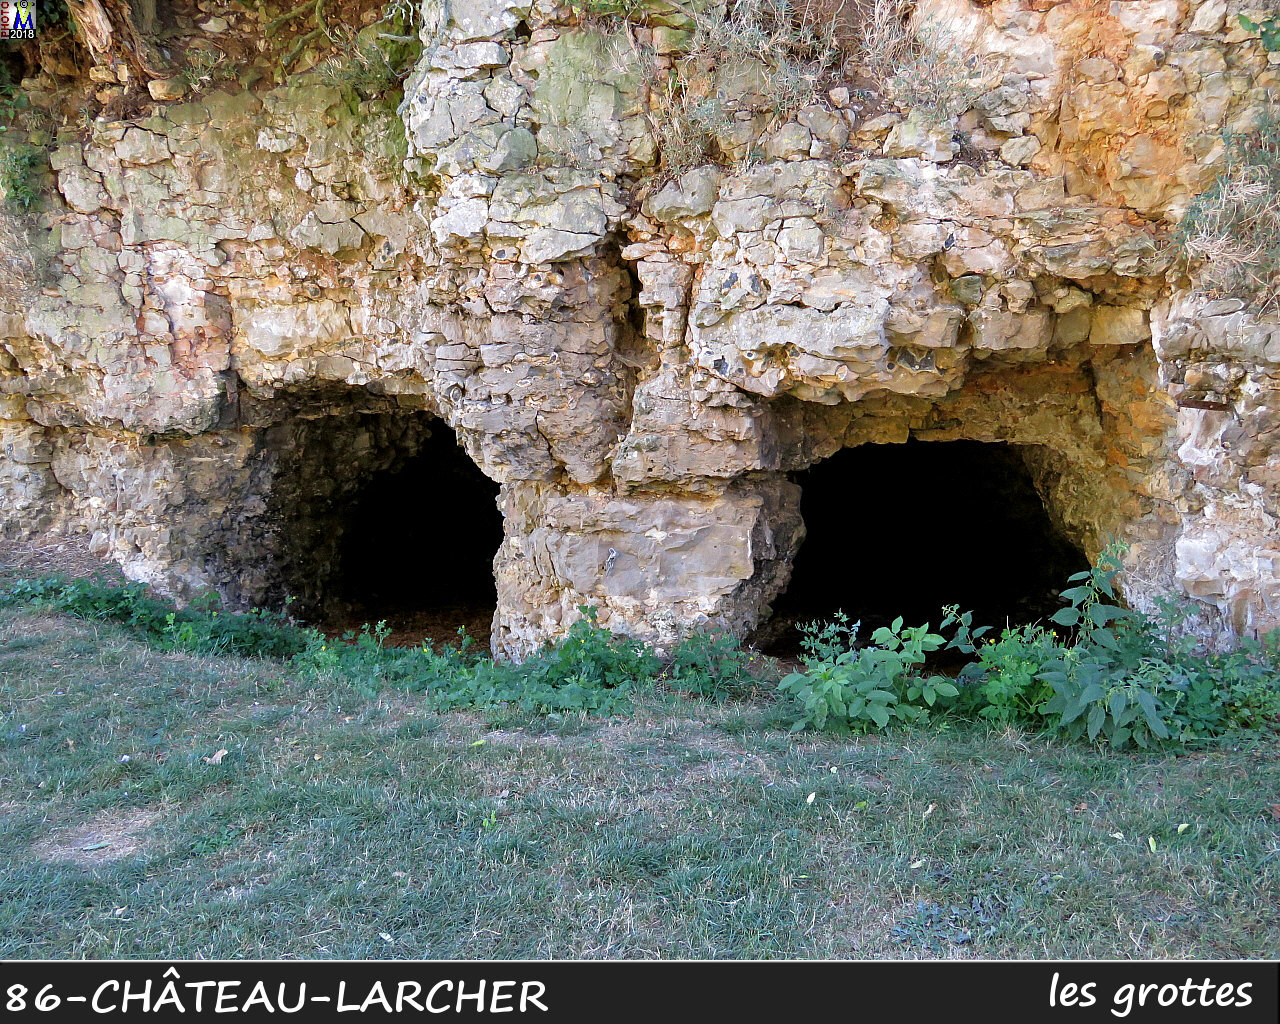 86CHATEAU-LARCHER_grottes_1010.jpg